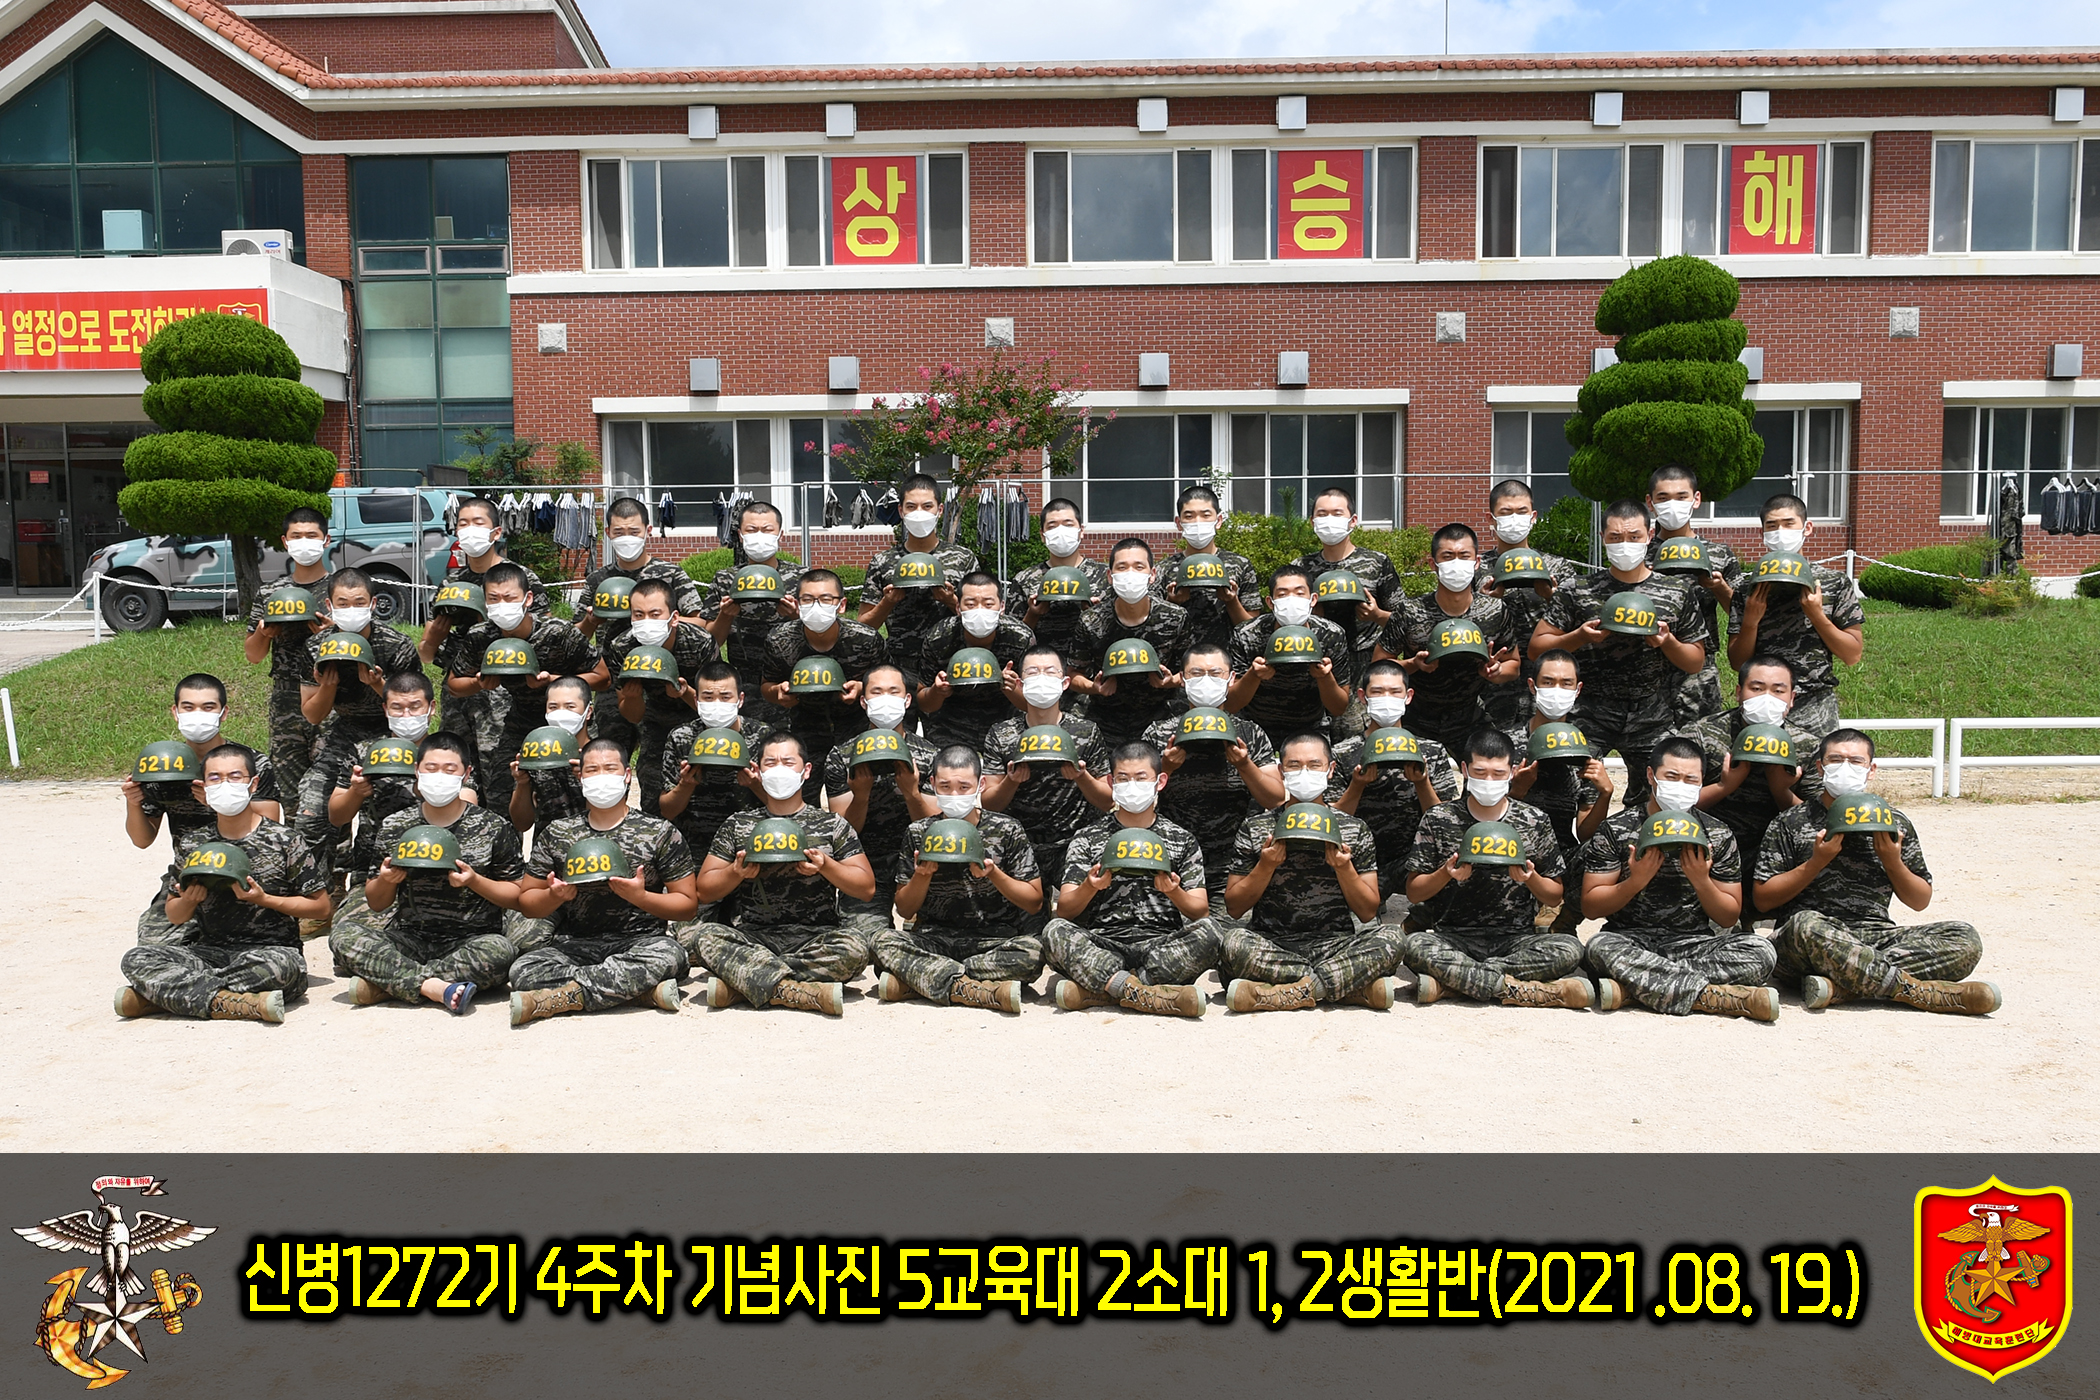 해병대 신병 1272기 5교육대 4주차 생활반별 사진3.jpg